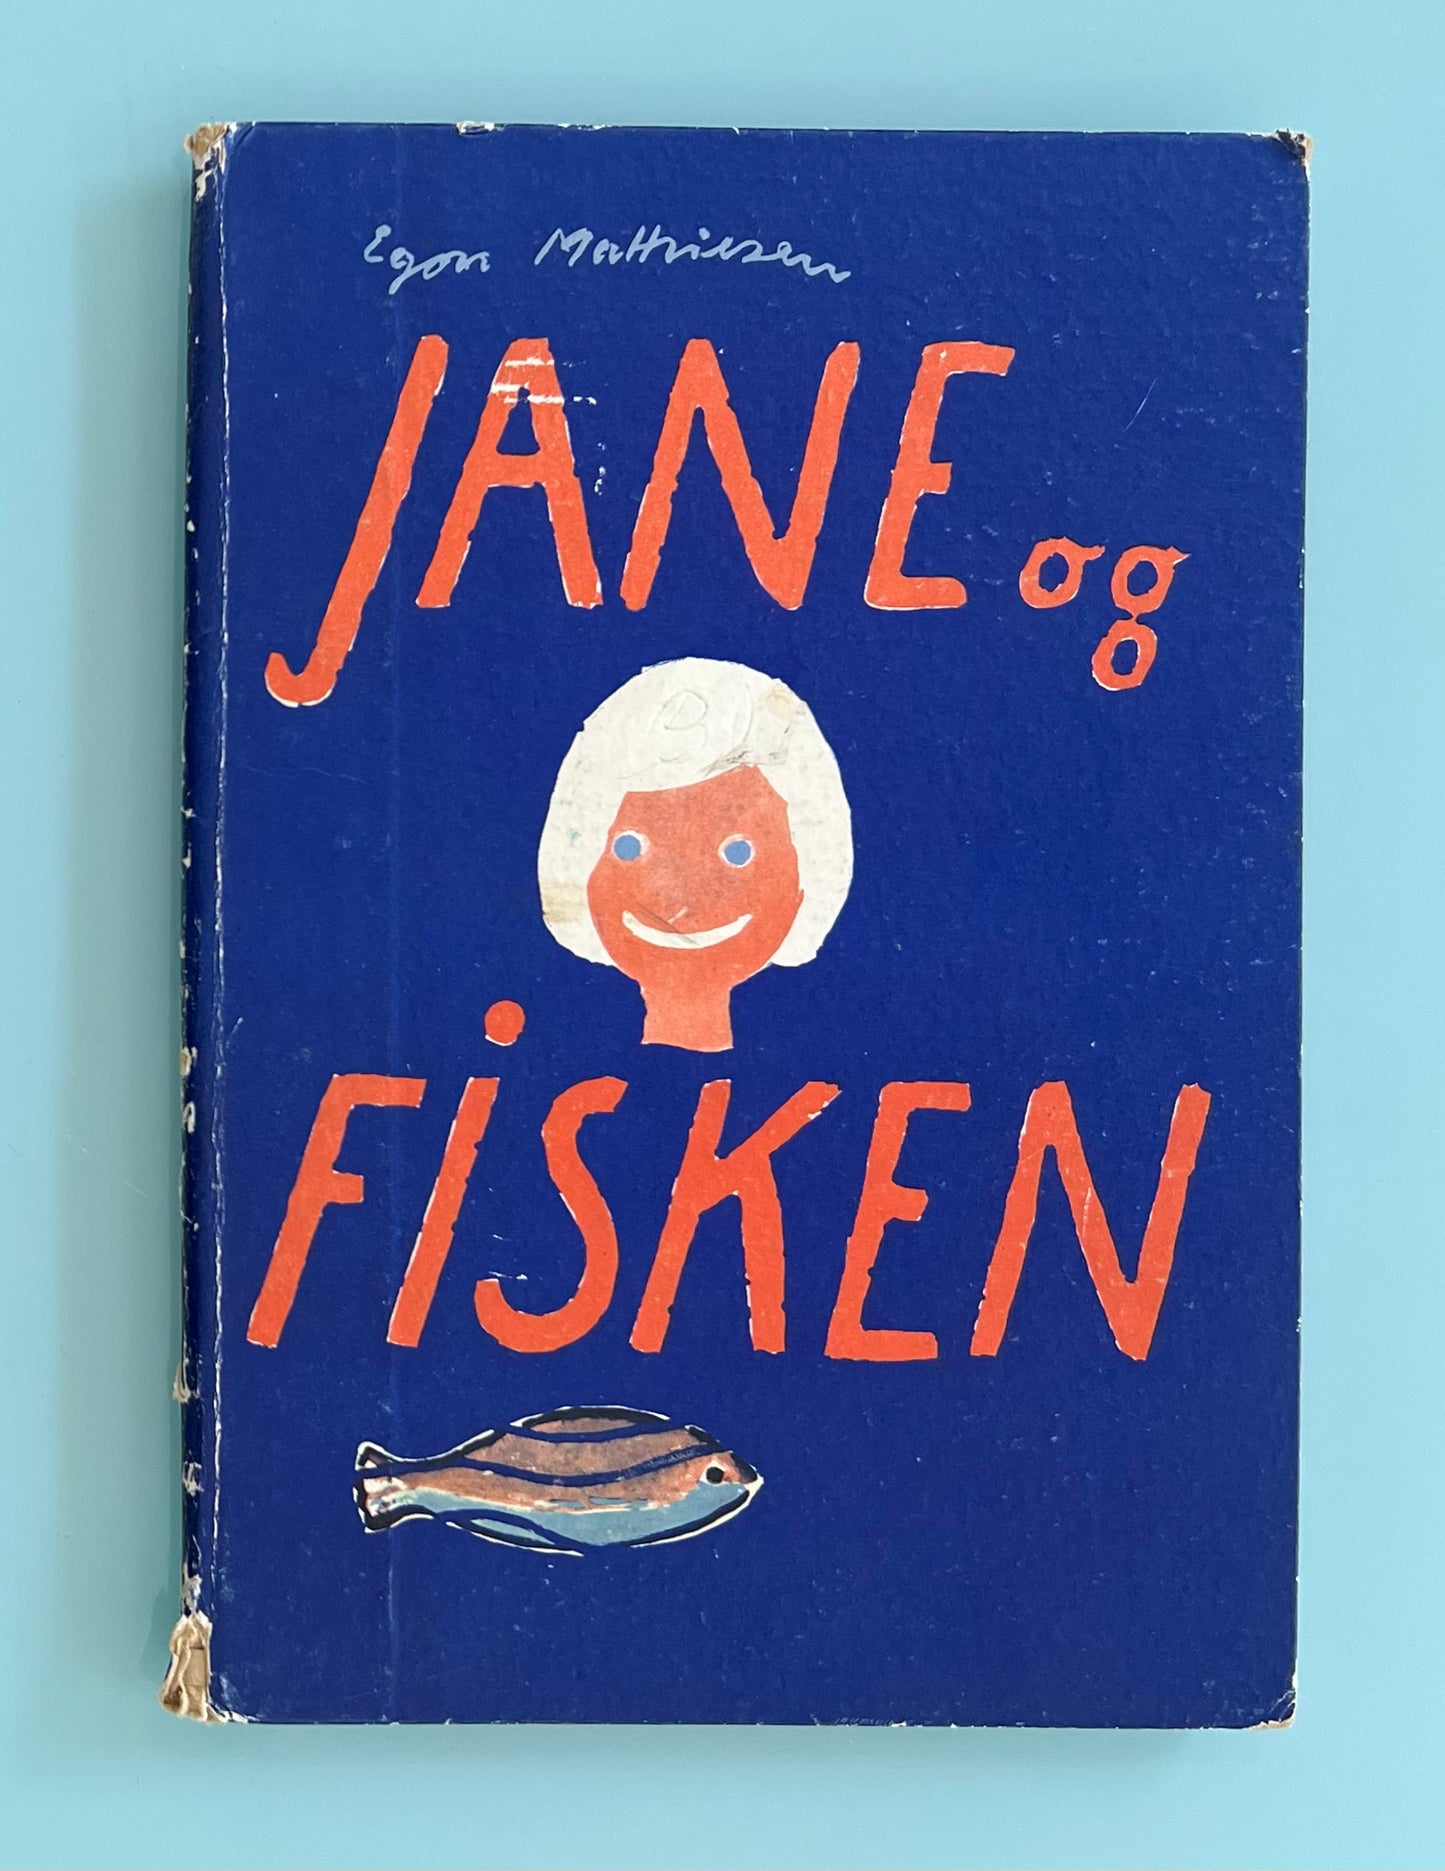 Egon Mathiesen. “Jane og Fisken”, 1956